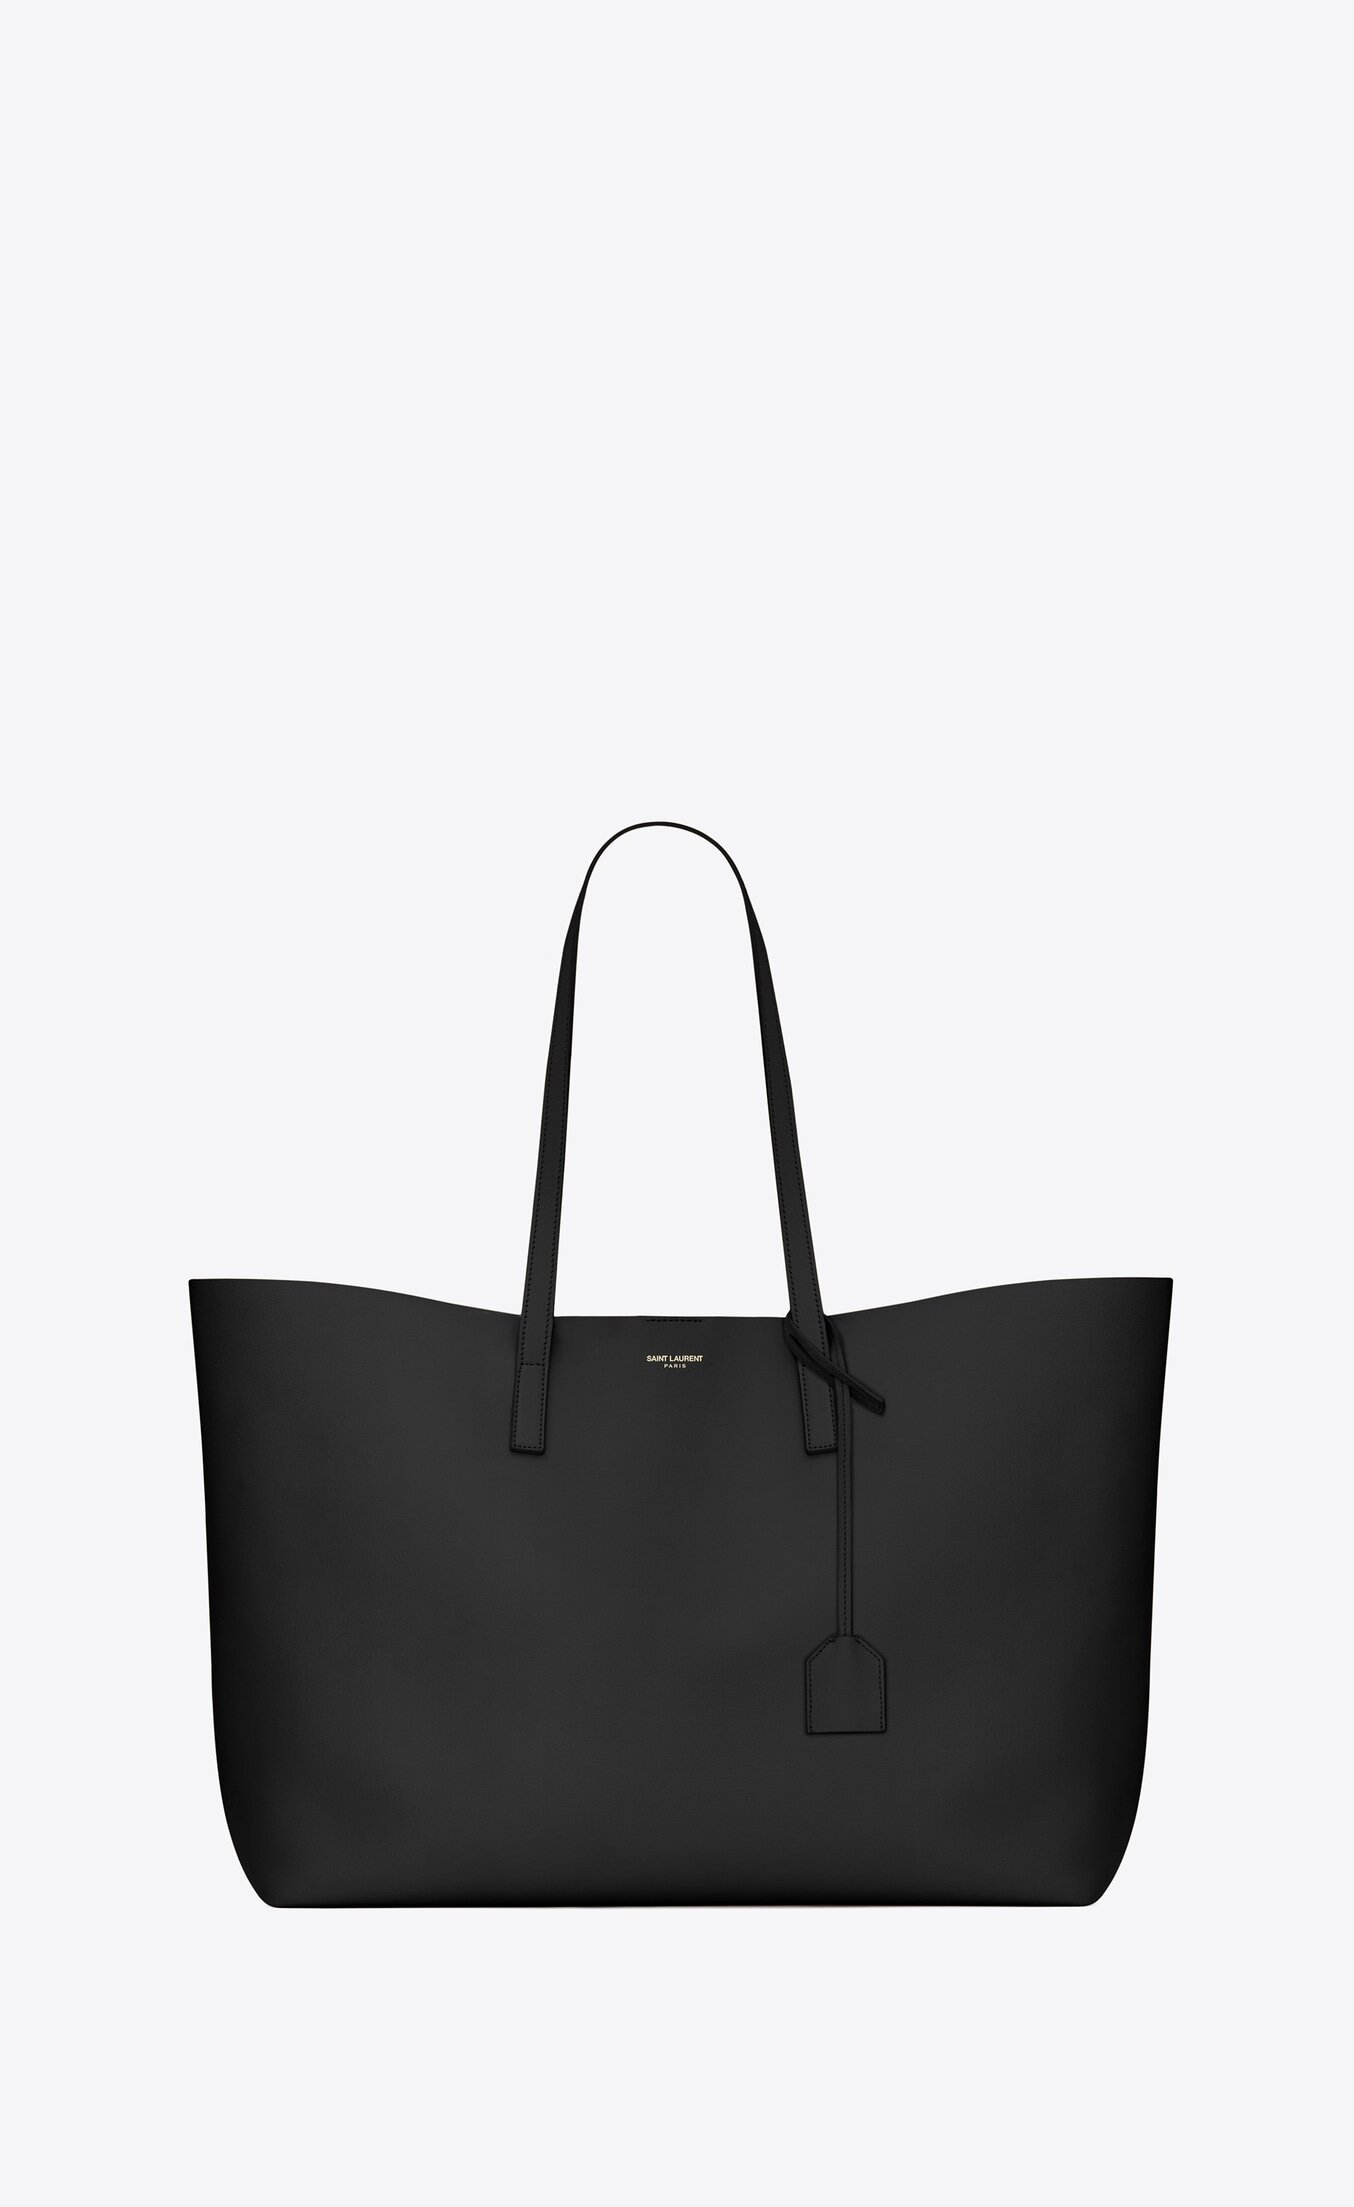 Saint Laurent Shopping Bag in Black Supple Leather.jpg